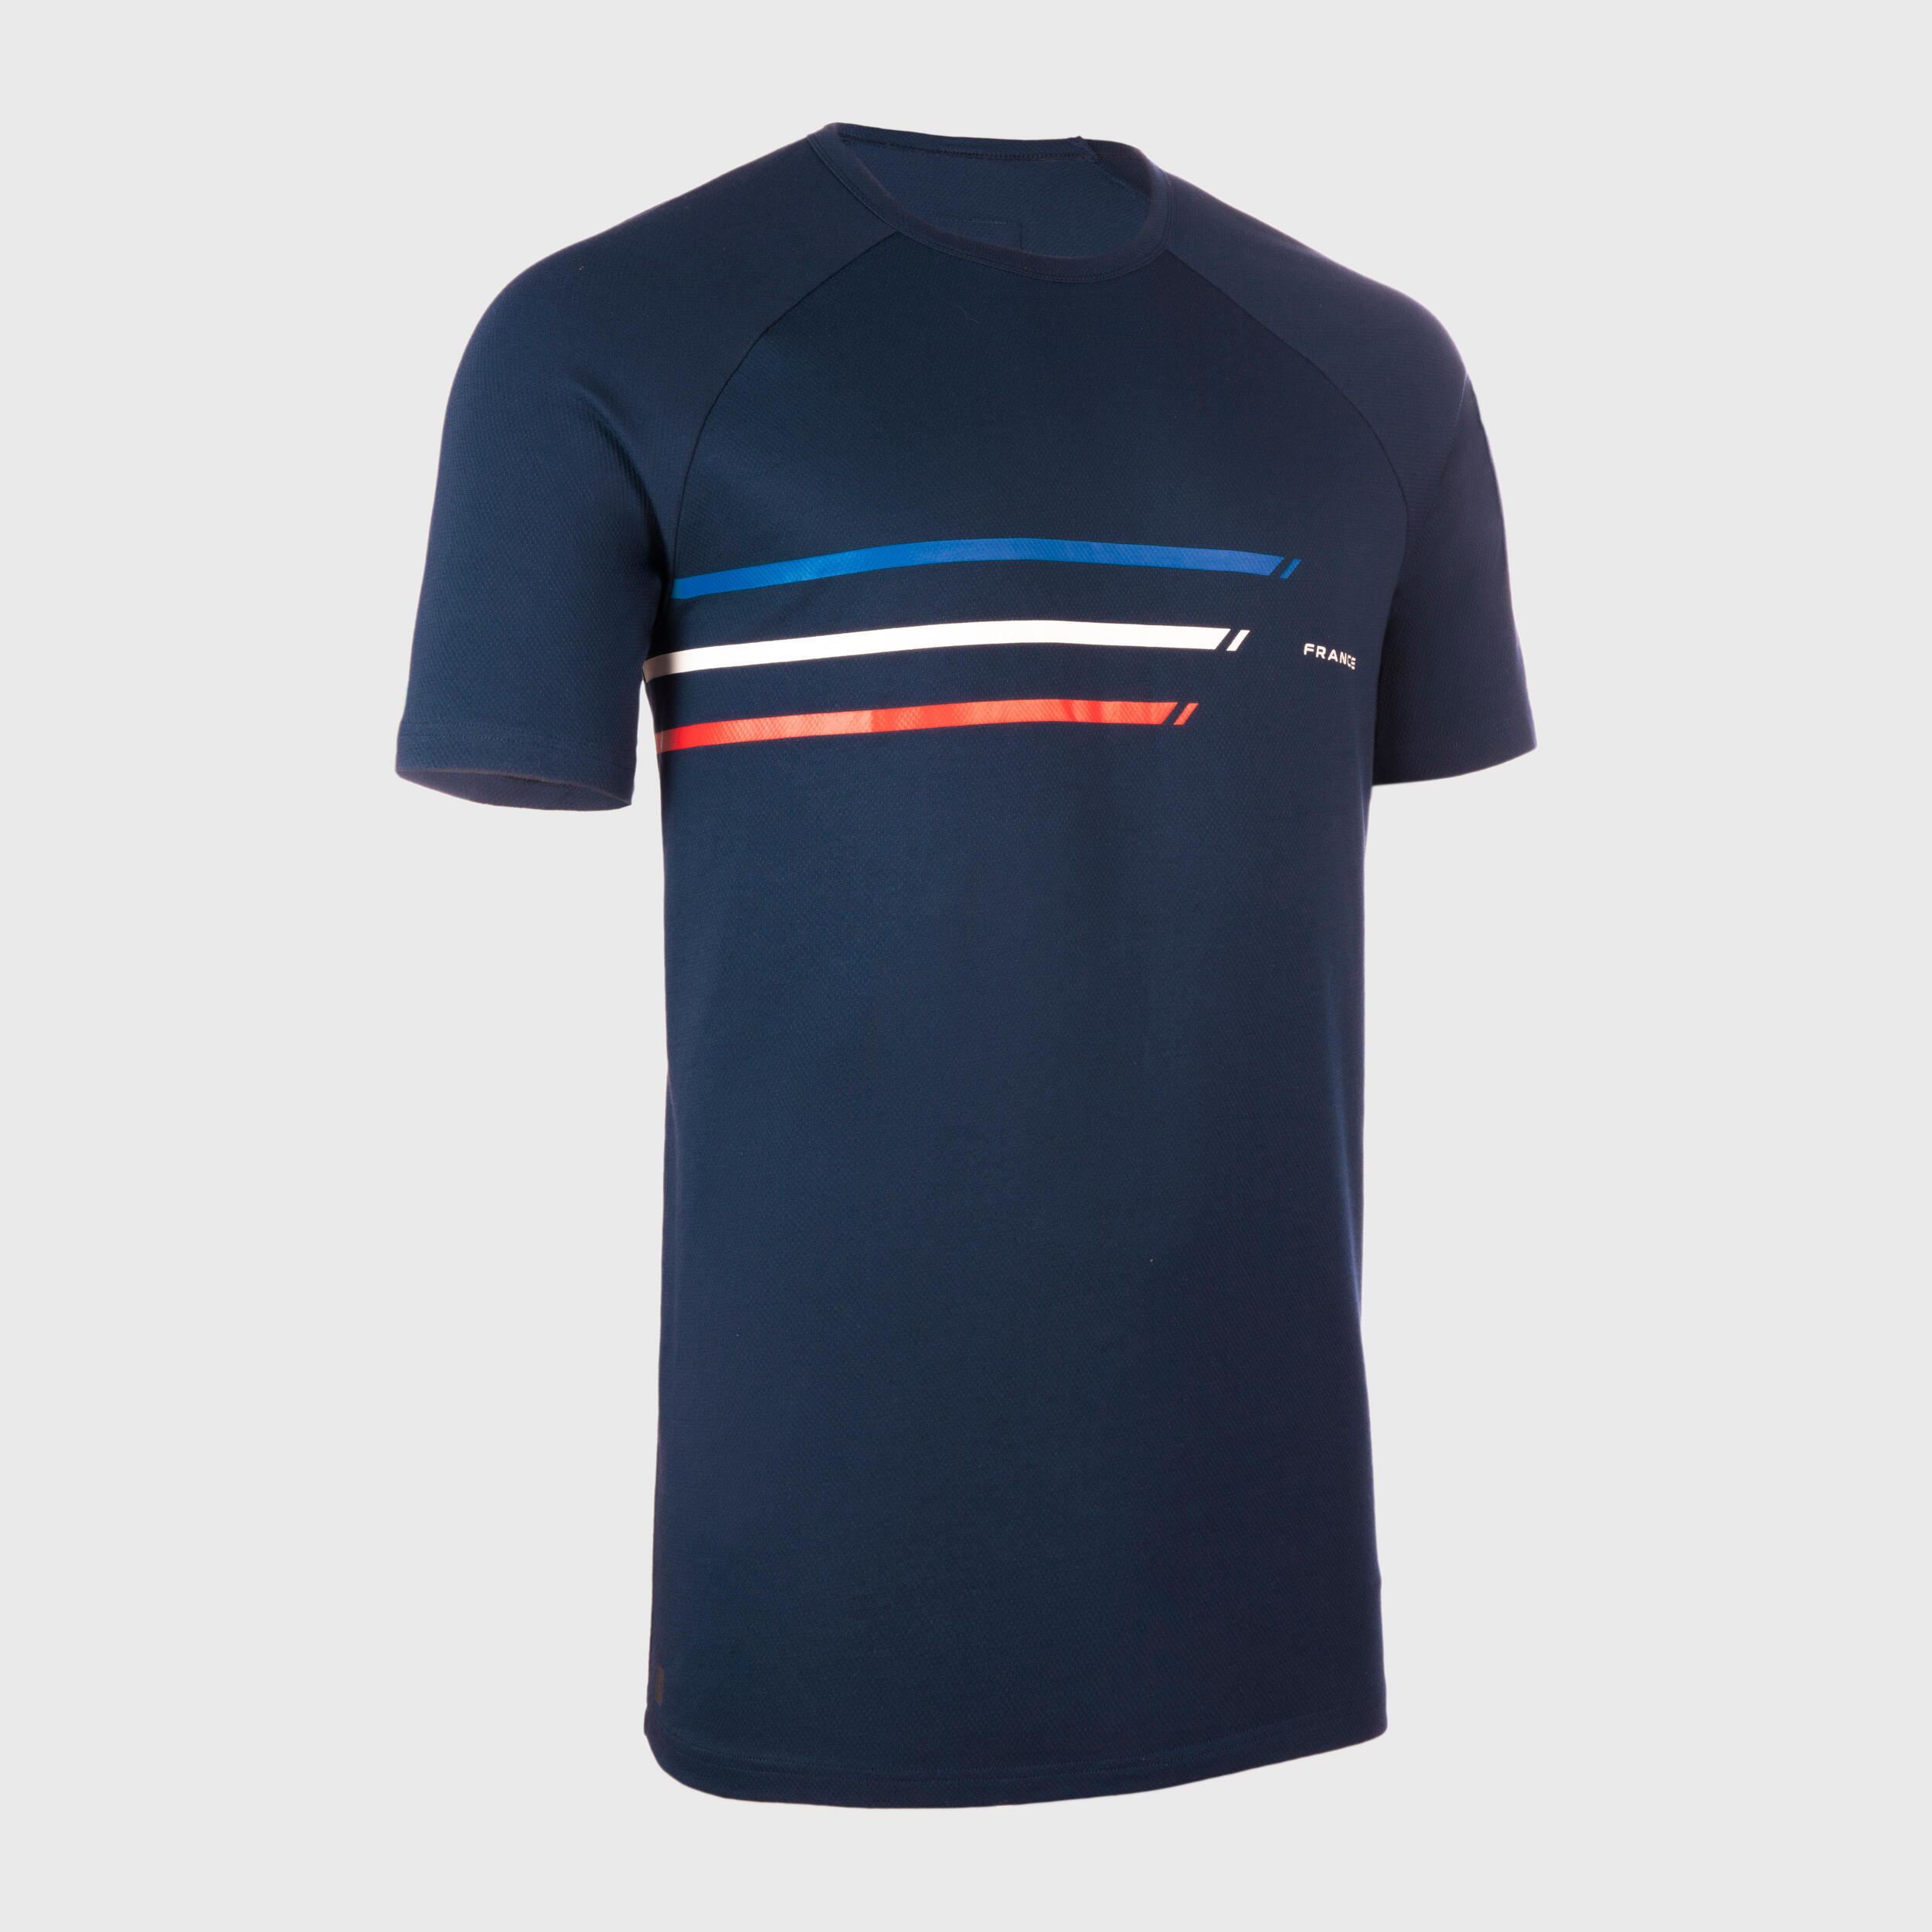 Men's/Women's Short-Sleeved T-Shirt R100 - France/Blue 1/7